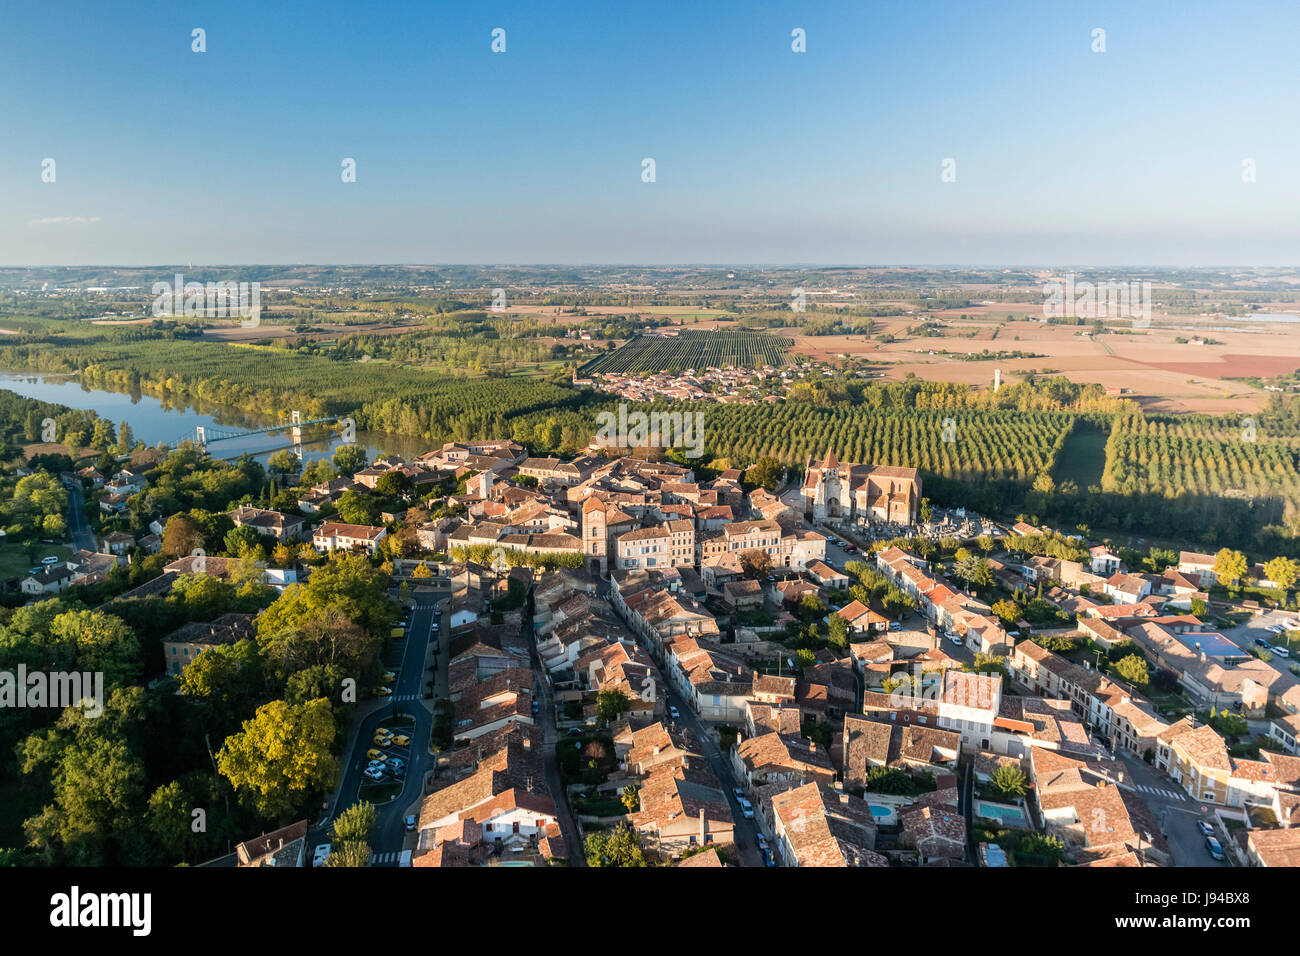 La France, Tarn et Garonne, Auvillar, étiqueté Les Plus Beaux Villages de France (Les Plus Beaux Villages de France), (vue aérienne) Banque D'Images